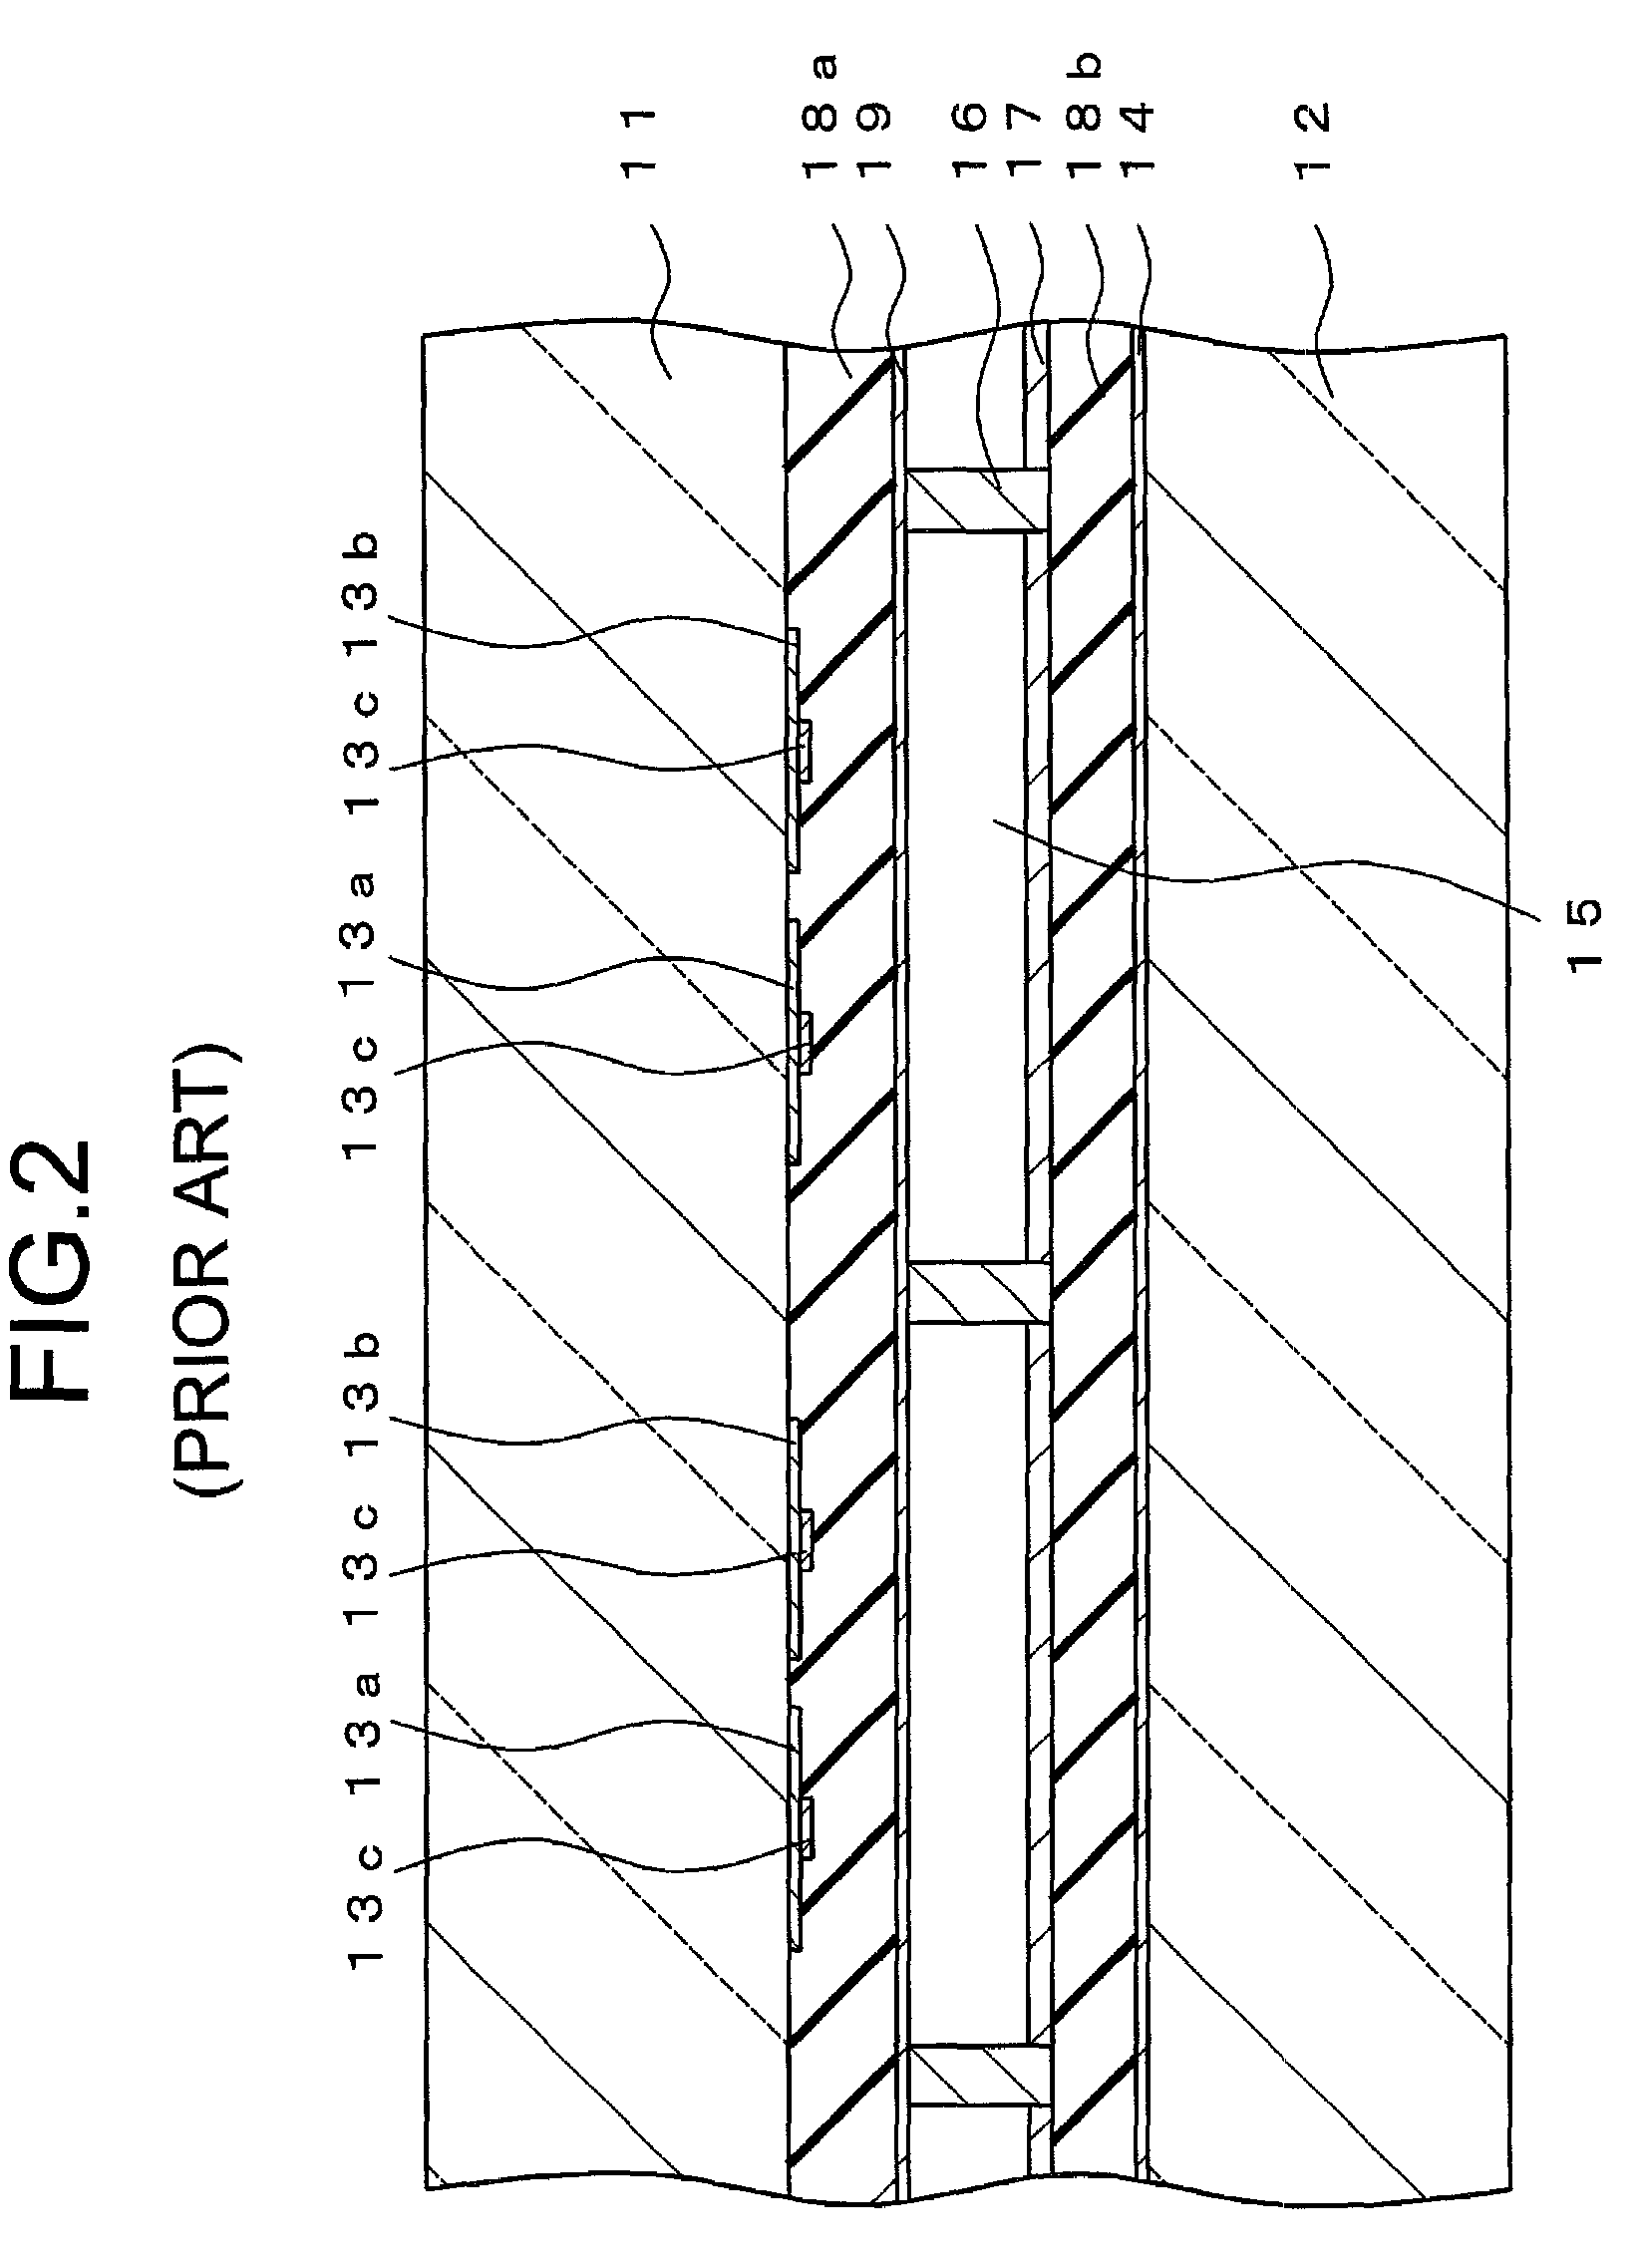 Plasma display panel and method for fabricating the same